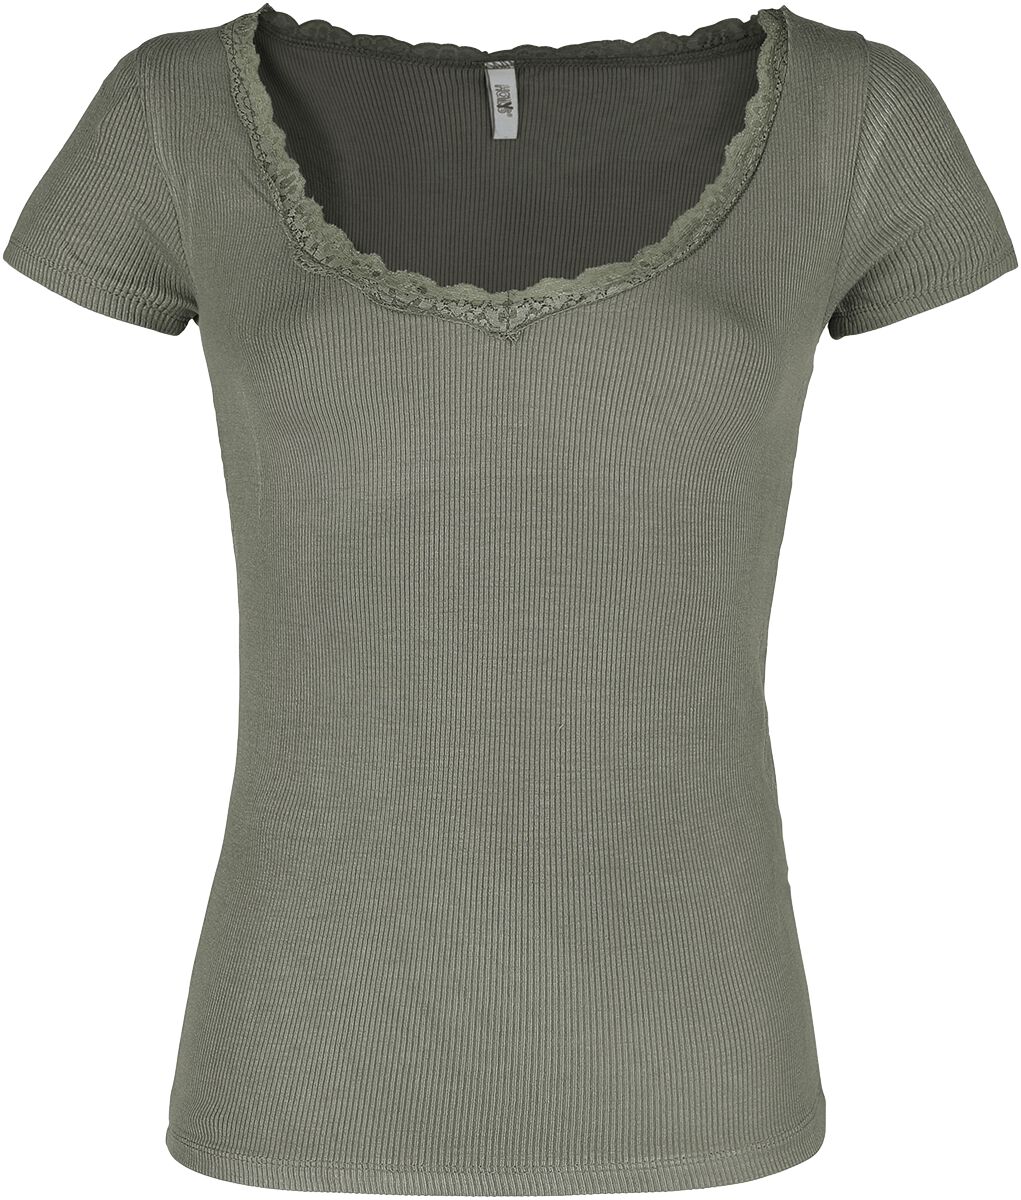 Hailys T-Shirt - Mariella - XS bis XL - für Damen - Größe L - khaki